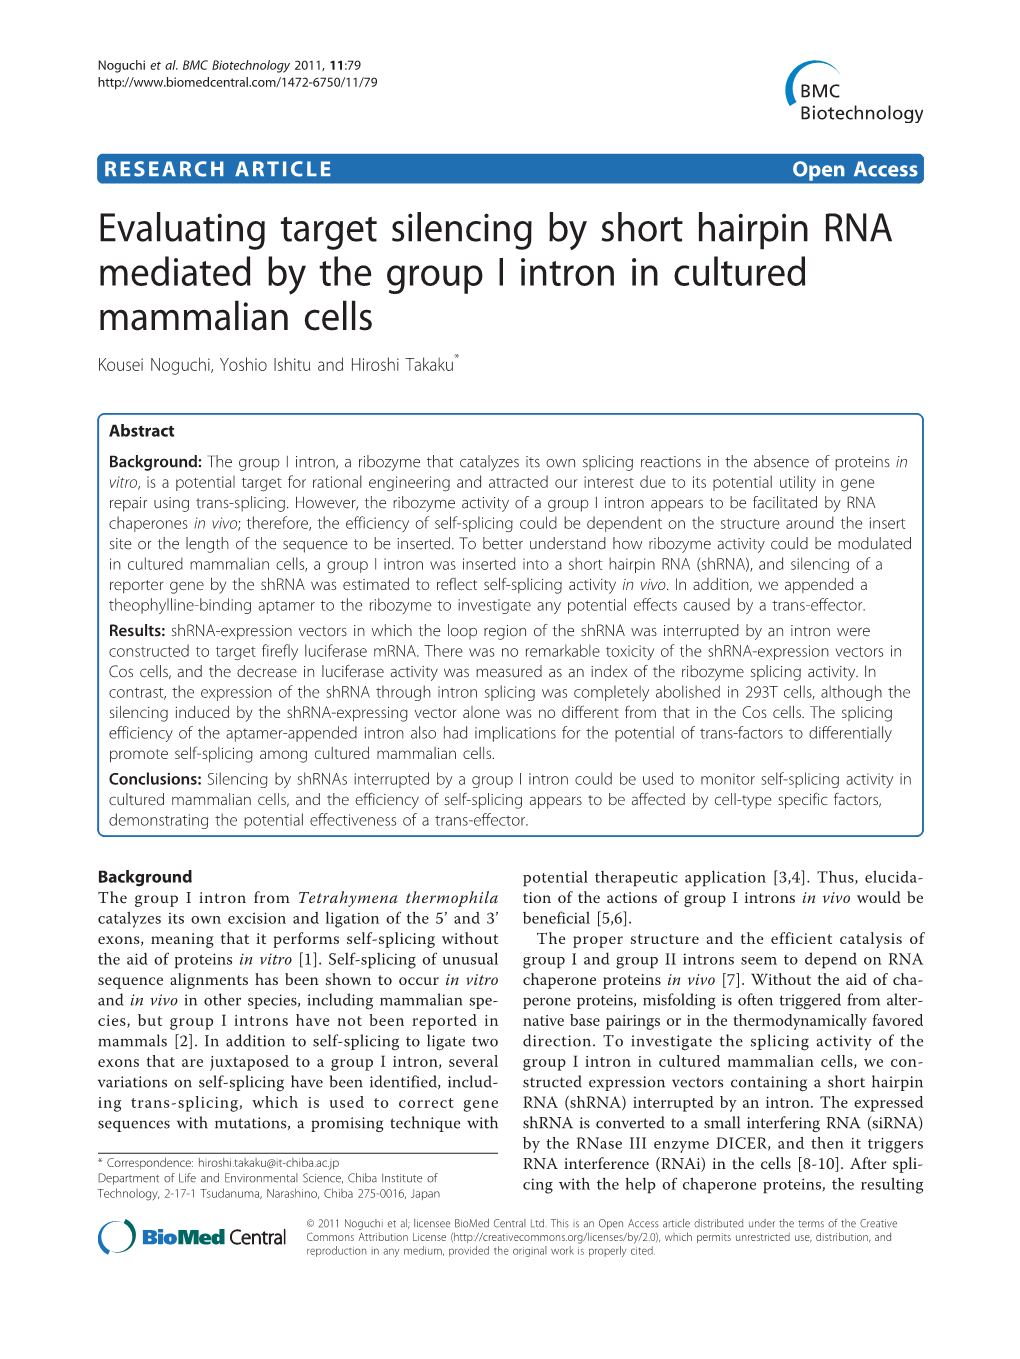 Evaluating Target Silencing by Short Hairpin RNA Mediated by the Group I Intron in Cultured Mammalian Cells Kousei Noguchi, Yoshio Ishitu and Hiroshi Takaku*